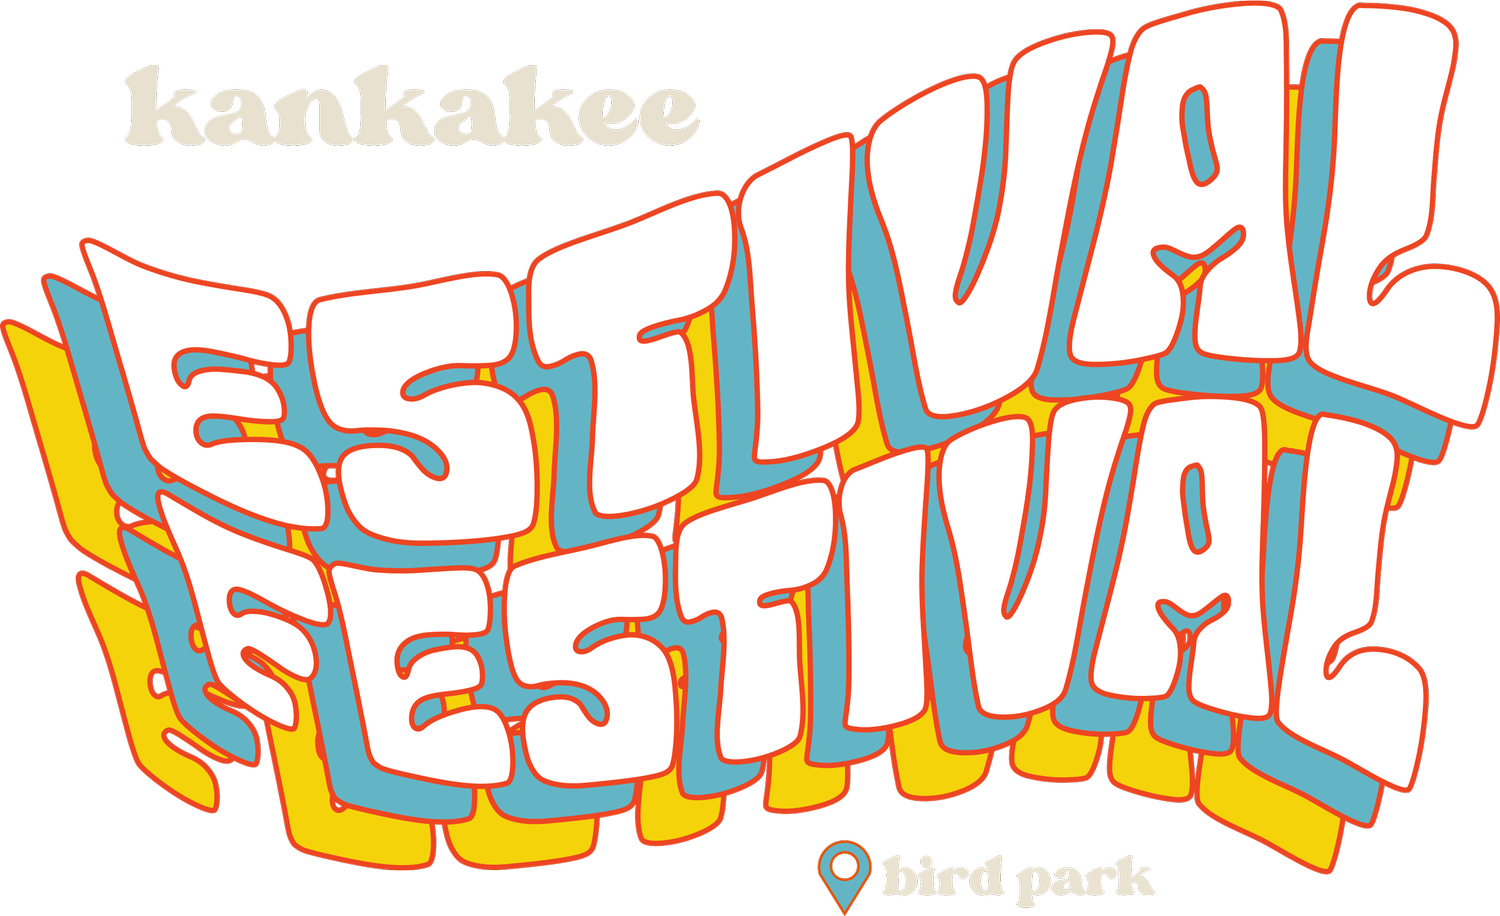 Kankakee Estival Festival